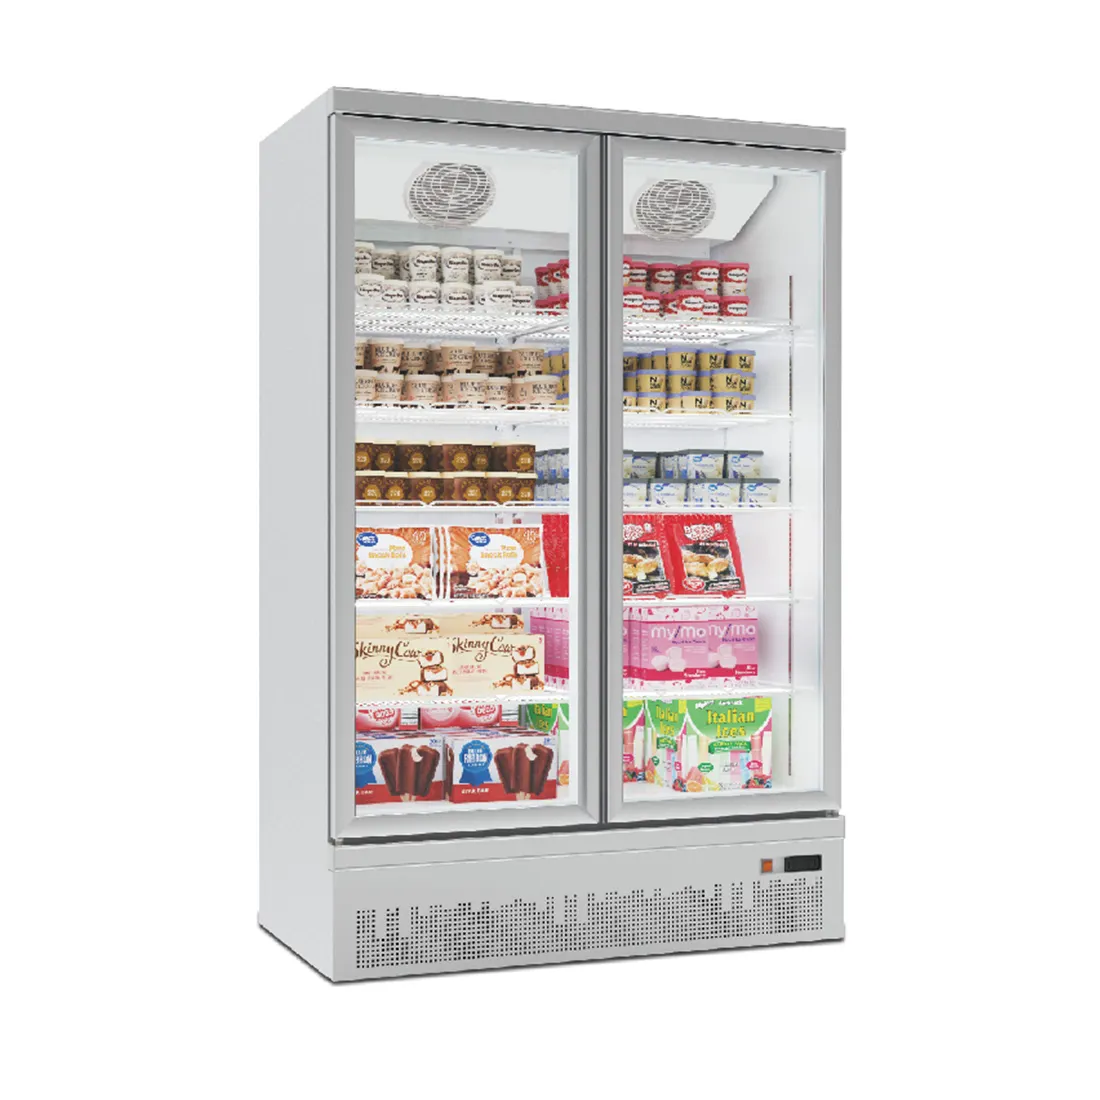 Sistem Pendingin Atas Freezer Vertikal Supermarket Dua Pintu Kaca Freezer untuk Toko Belanja